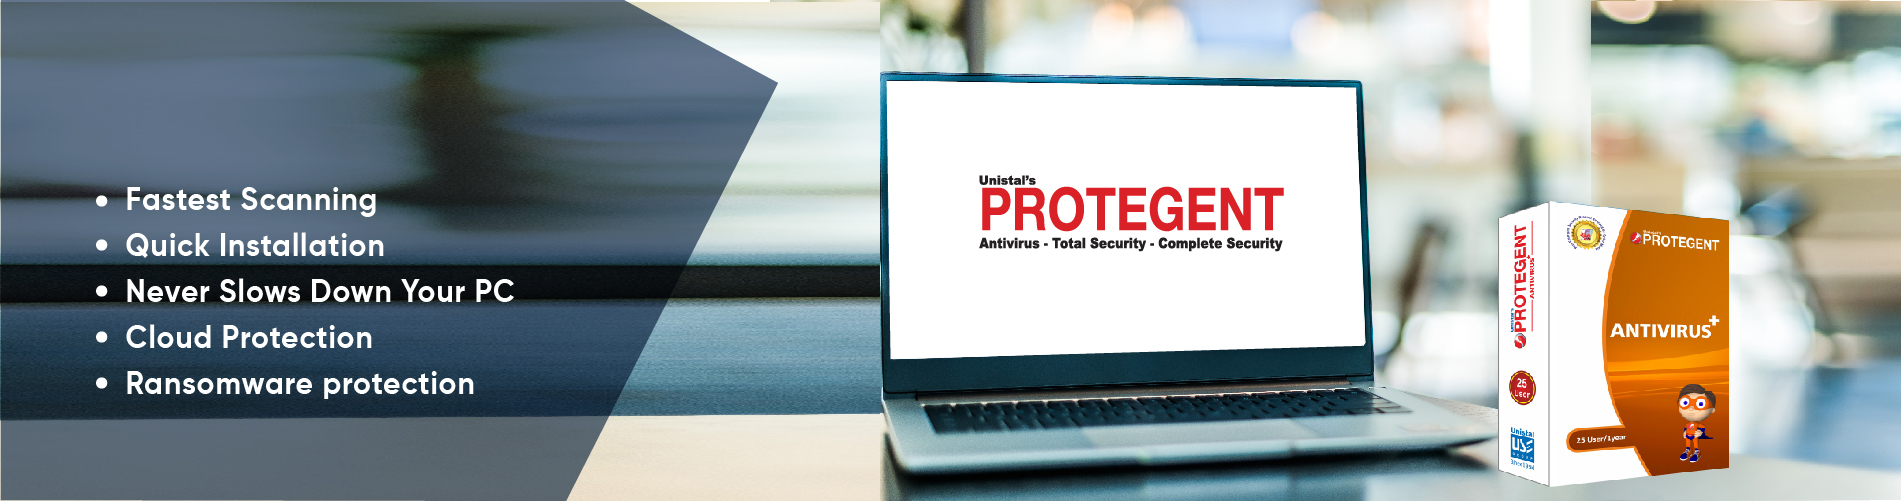 Protegent Antivirus Features